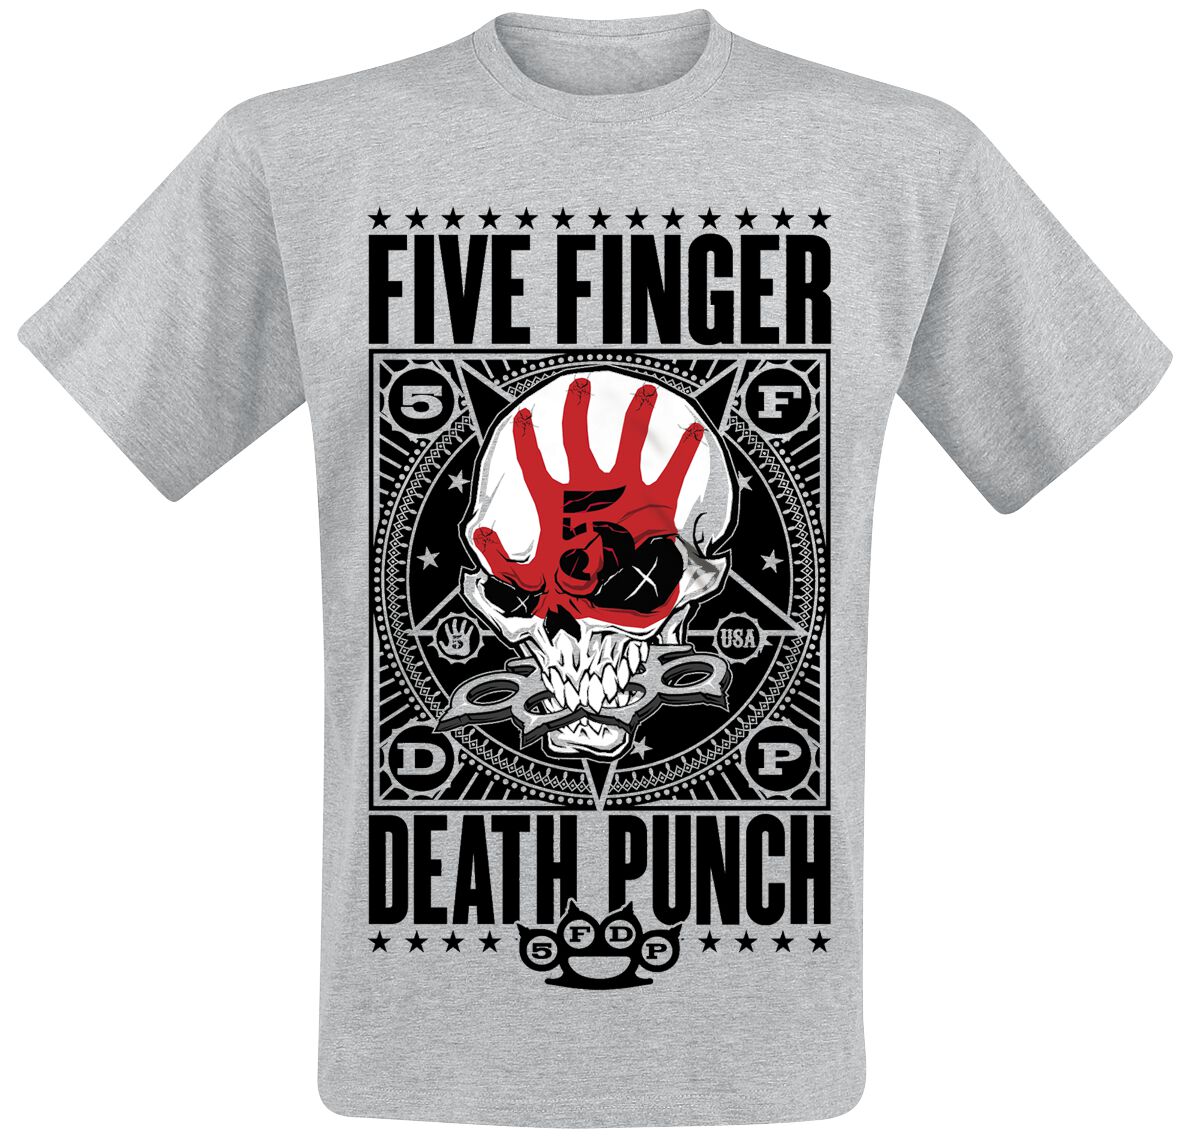 Five Finger Death Punch T-Shirt - Punchagram - M bis XXL - für Männer - Größe M - grau meliert  - EMP exklusives Merchandise!